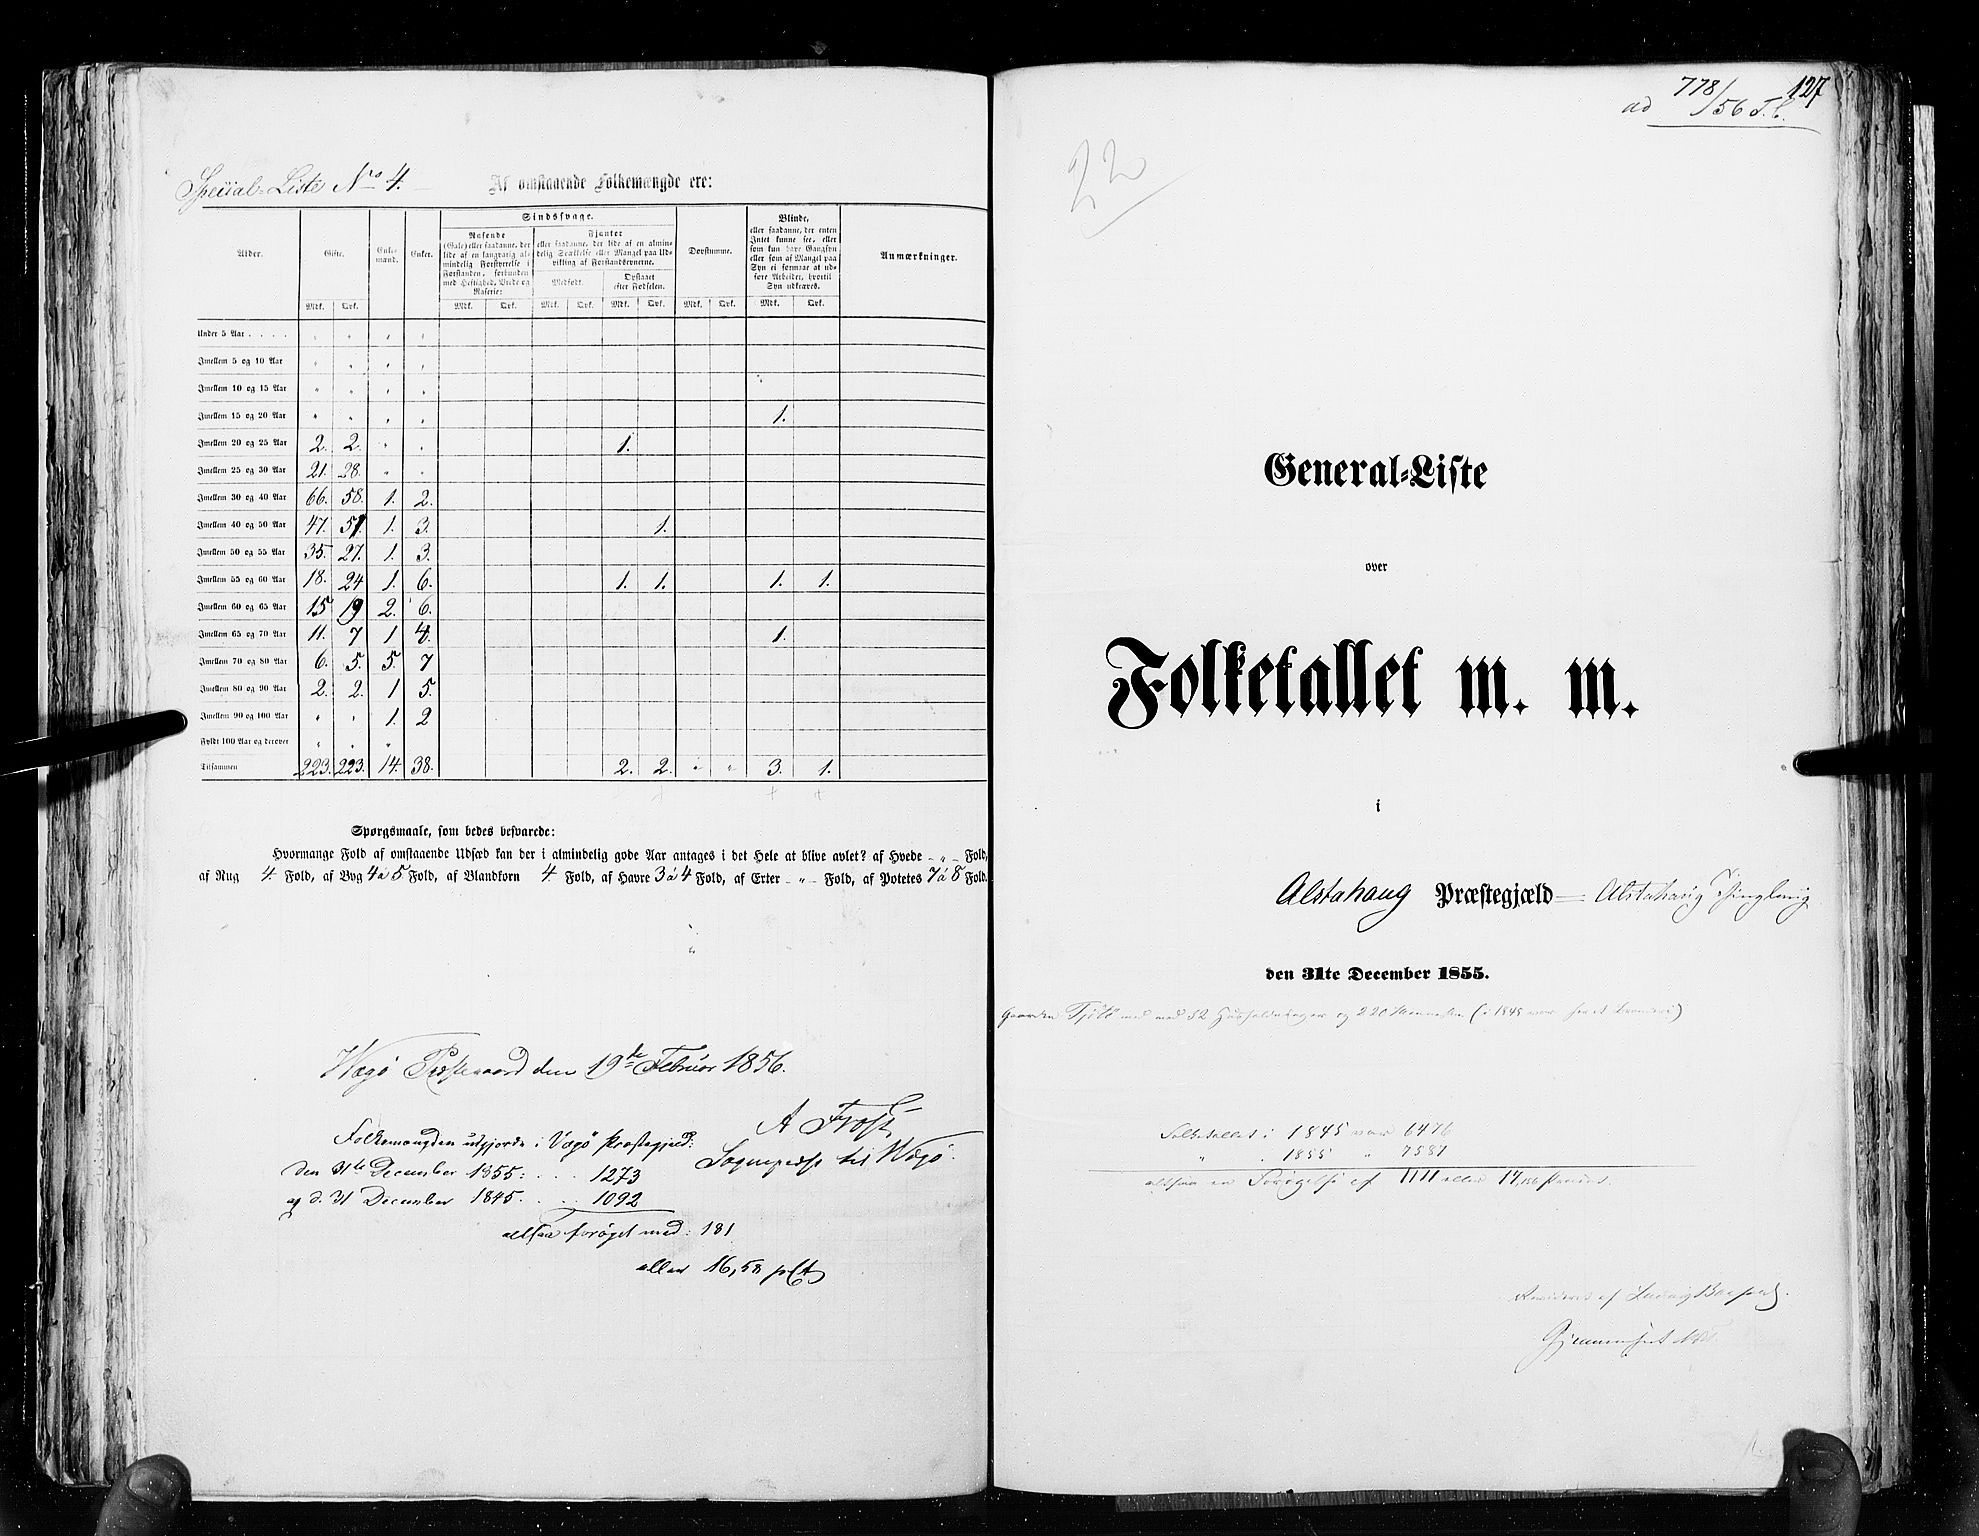 RA, Census 1855, vol. 6A: Nordre Trondhjem amt og Nordland amt, 1855, p. 127